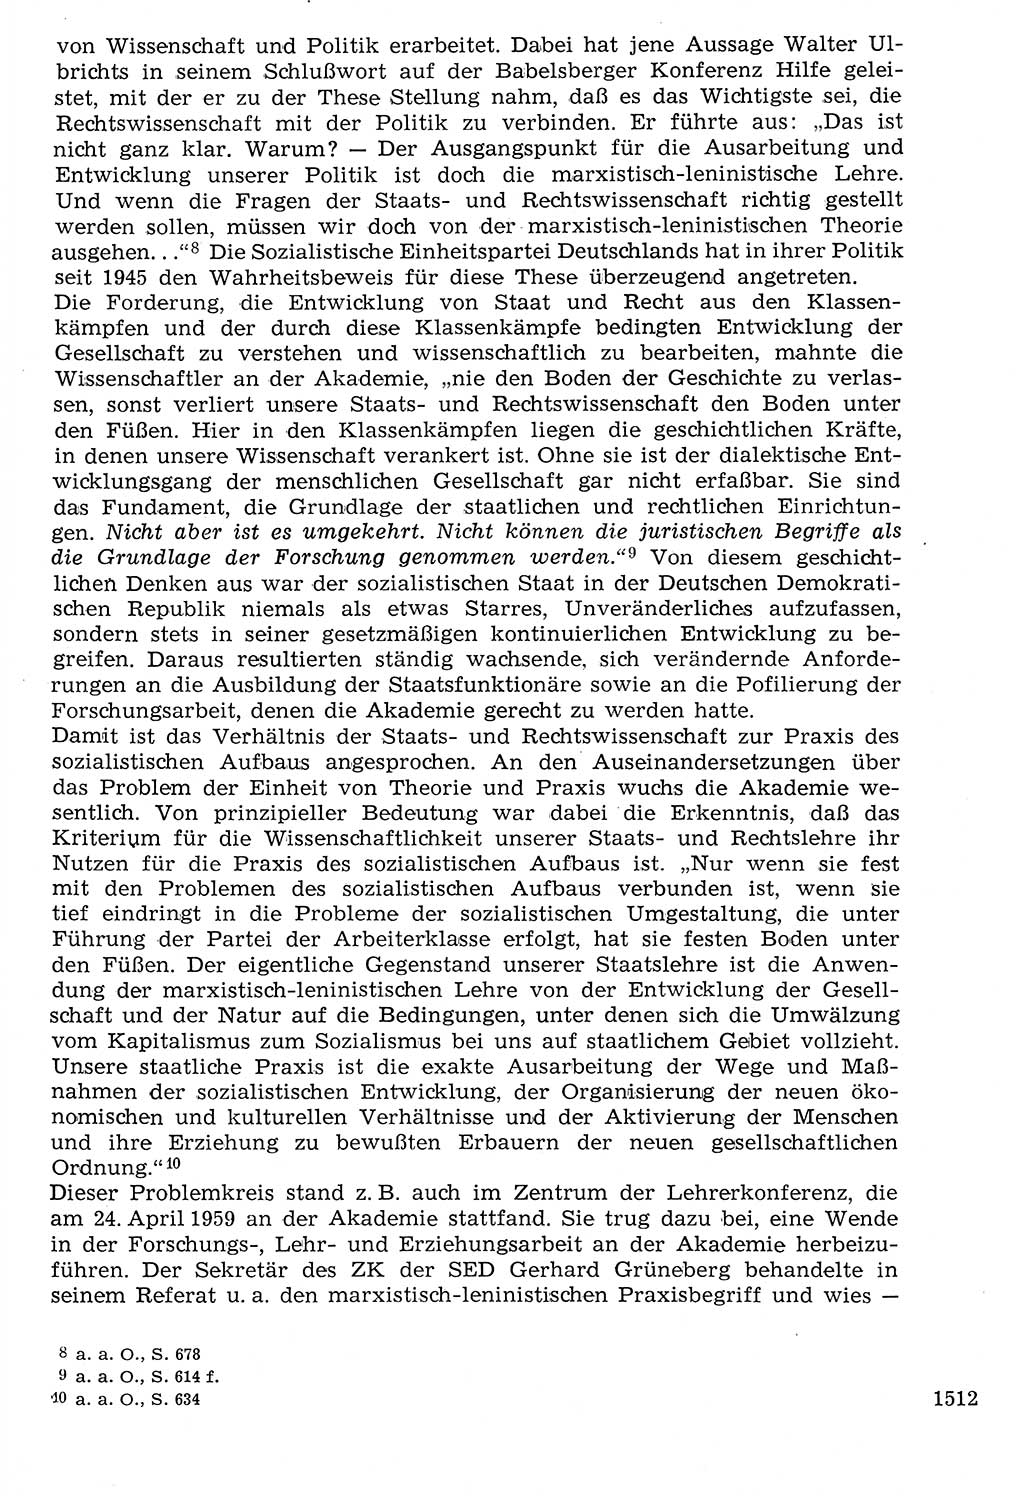 Staat und Recht (StuR), 17. Jahrgang [Deutsche Demokratische Republik (DDR)] 1968, Seite 1512 (StuR DDR 1968, S. 1512)